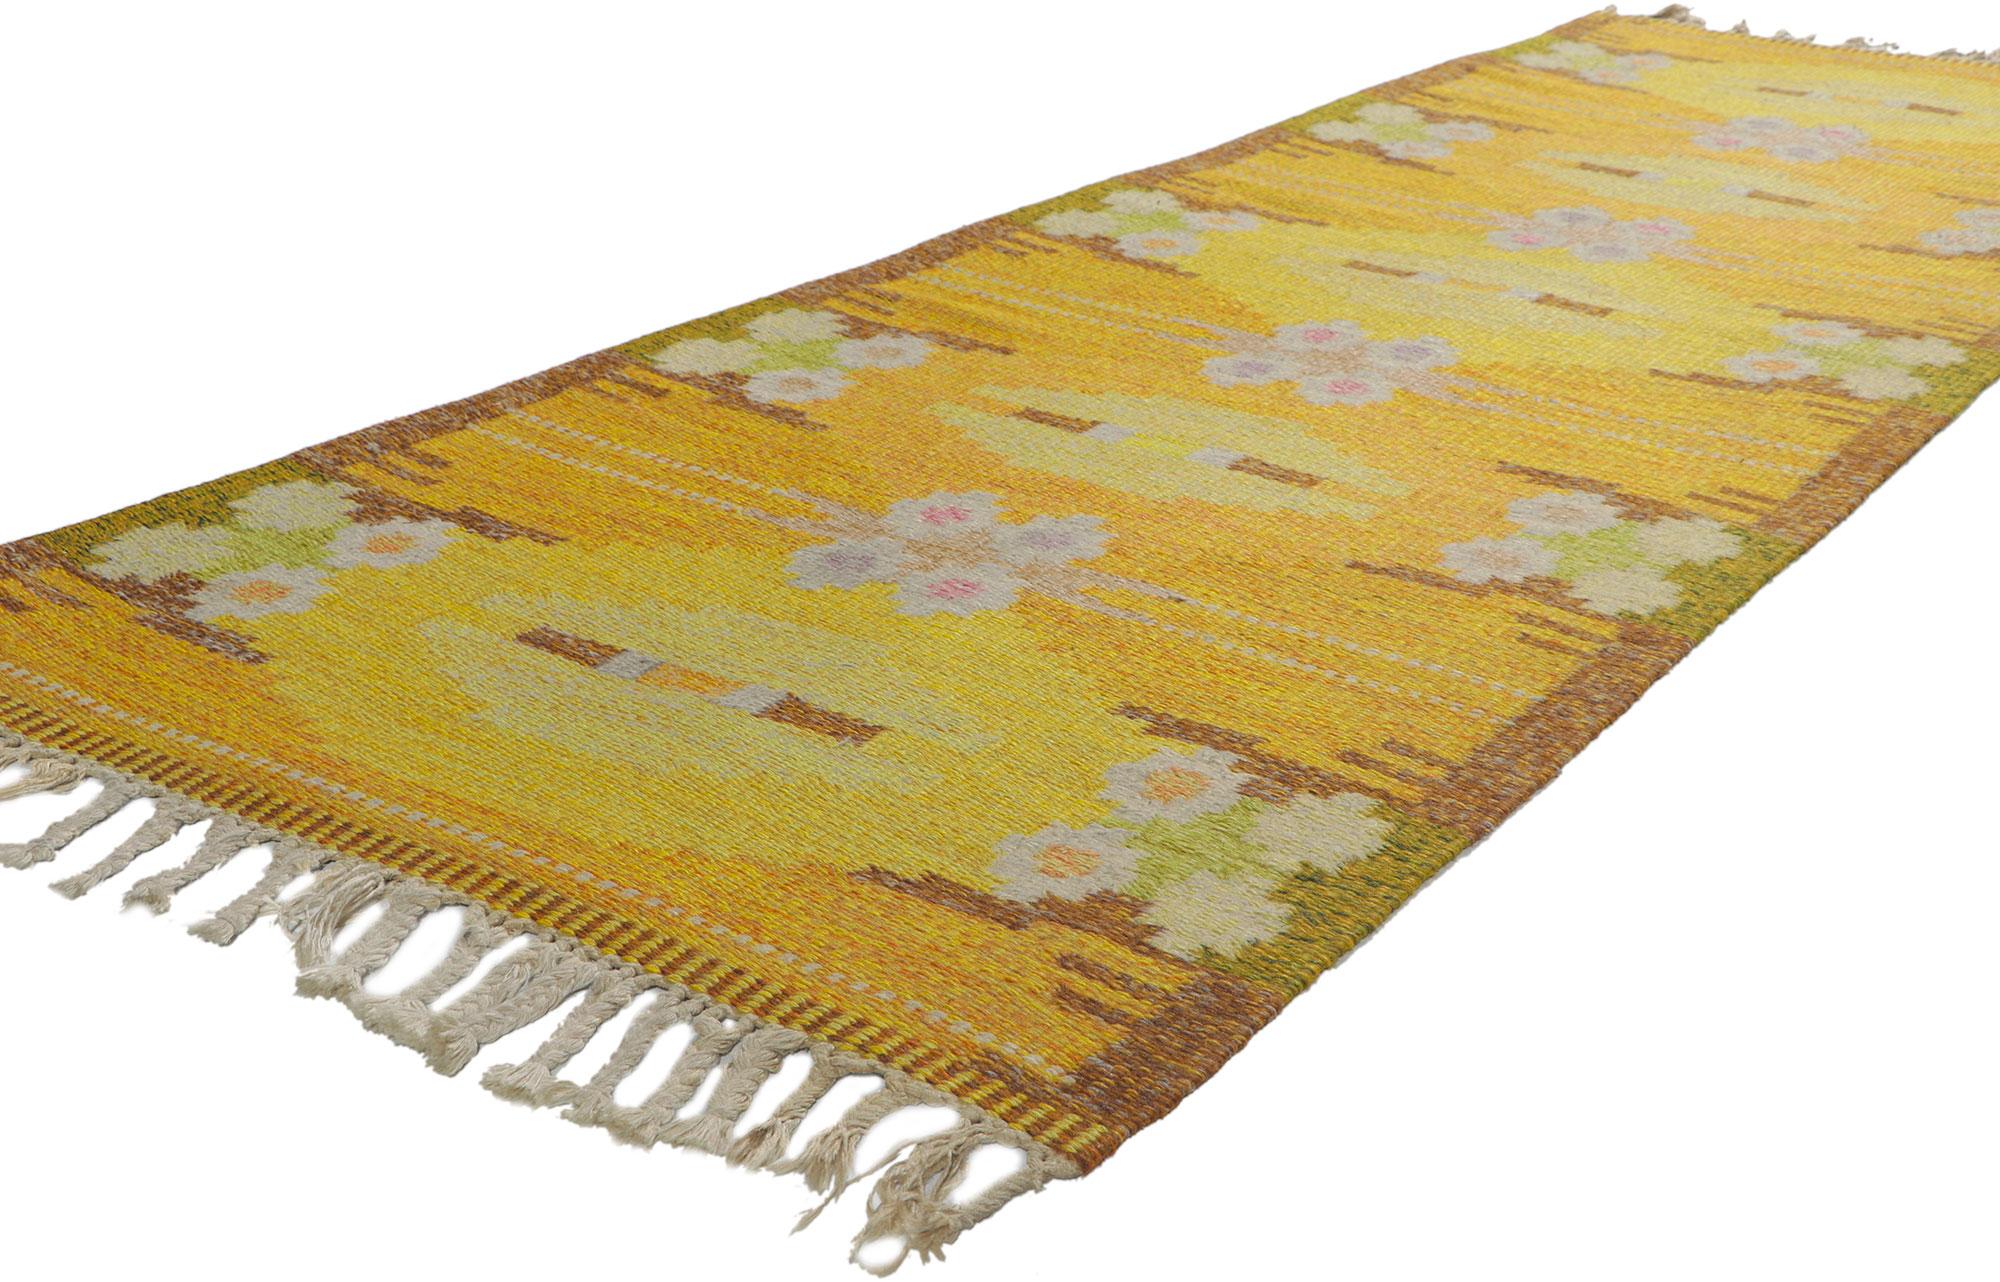 78507 Schwedischer Vintage-Kilim-Rollakan-Teppich von Ingegerd Silow, Maße 02'08 x 08'05.
Mit seinem skandinavisch-modernen Stil, seinen unglaublichen Details und seiner Textur ist dieser handgewebte schwedische Rollkan-Teppich aus Wolle eine